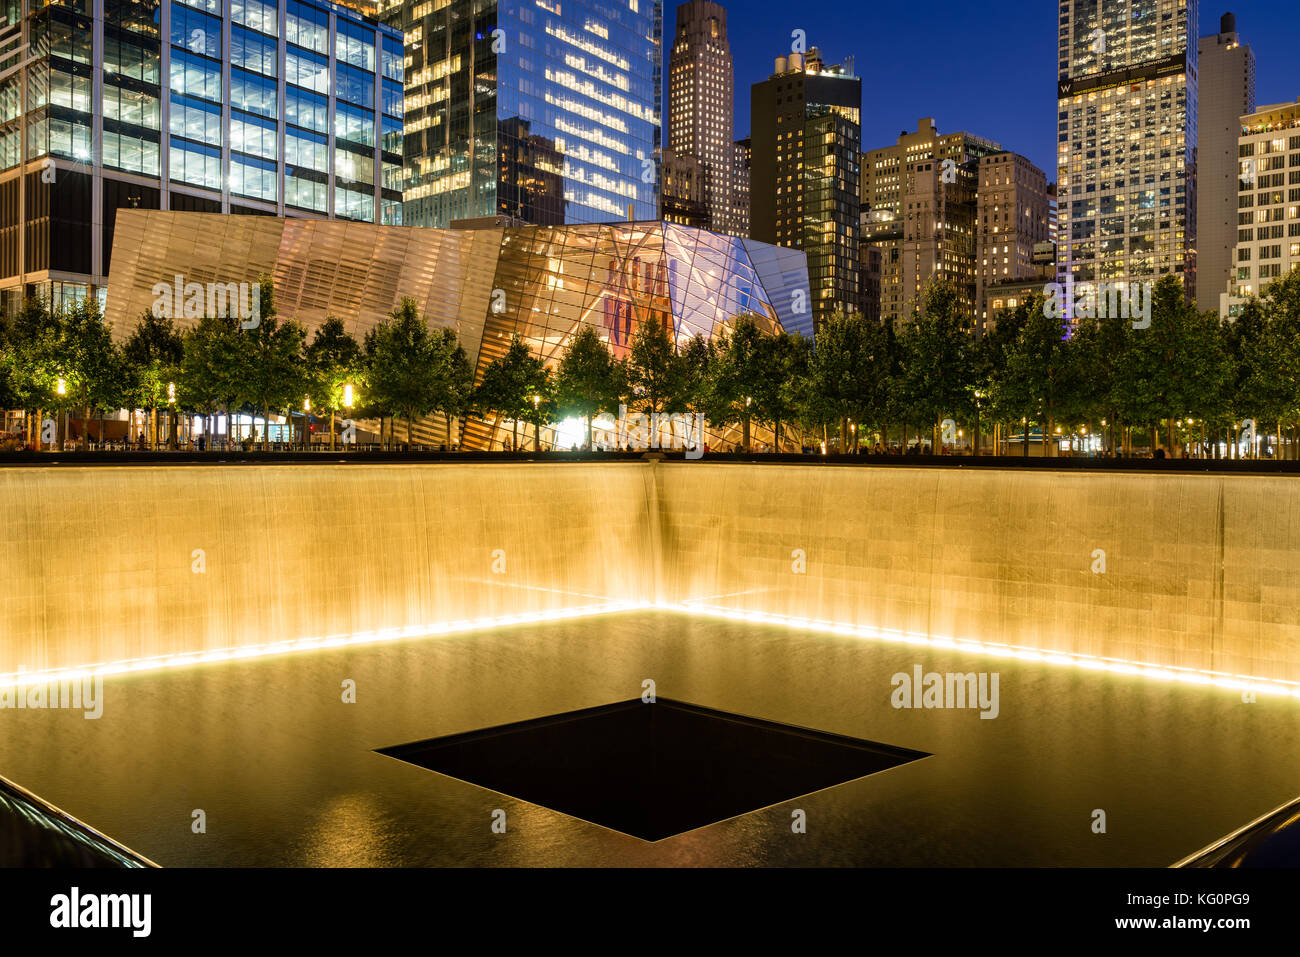 911 memorial at night